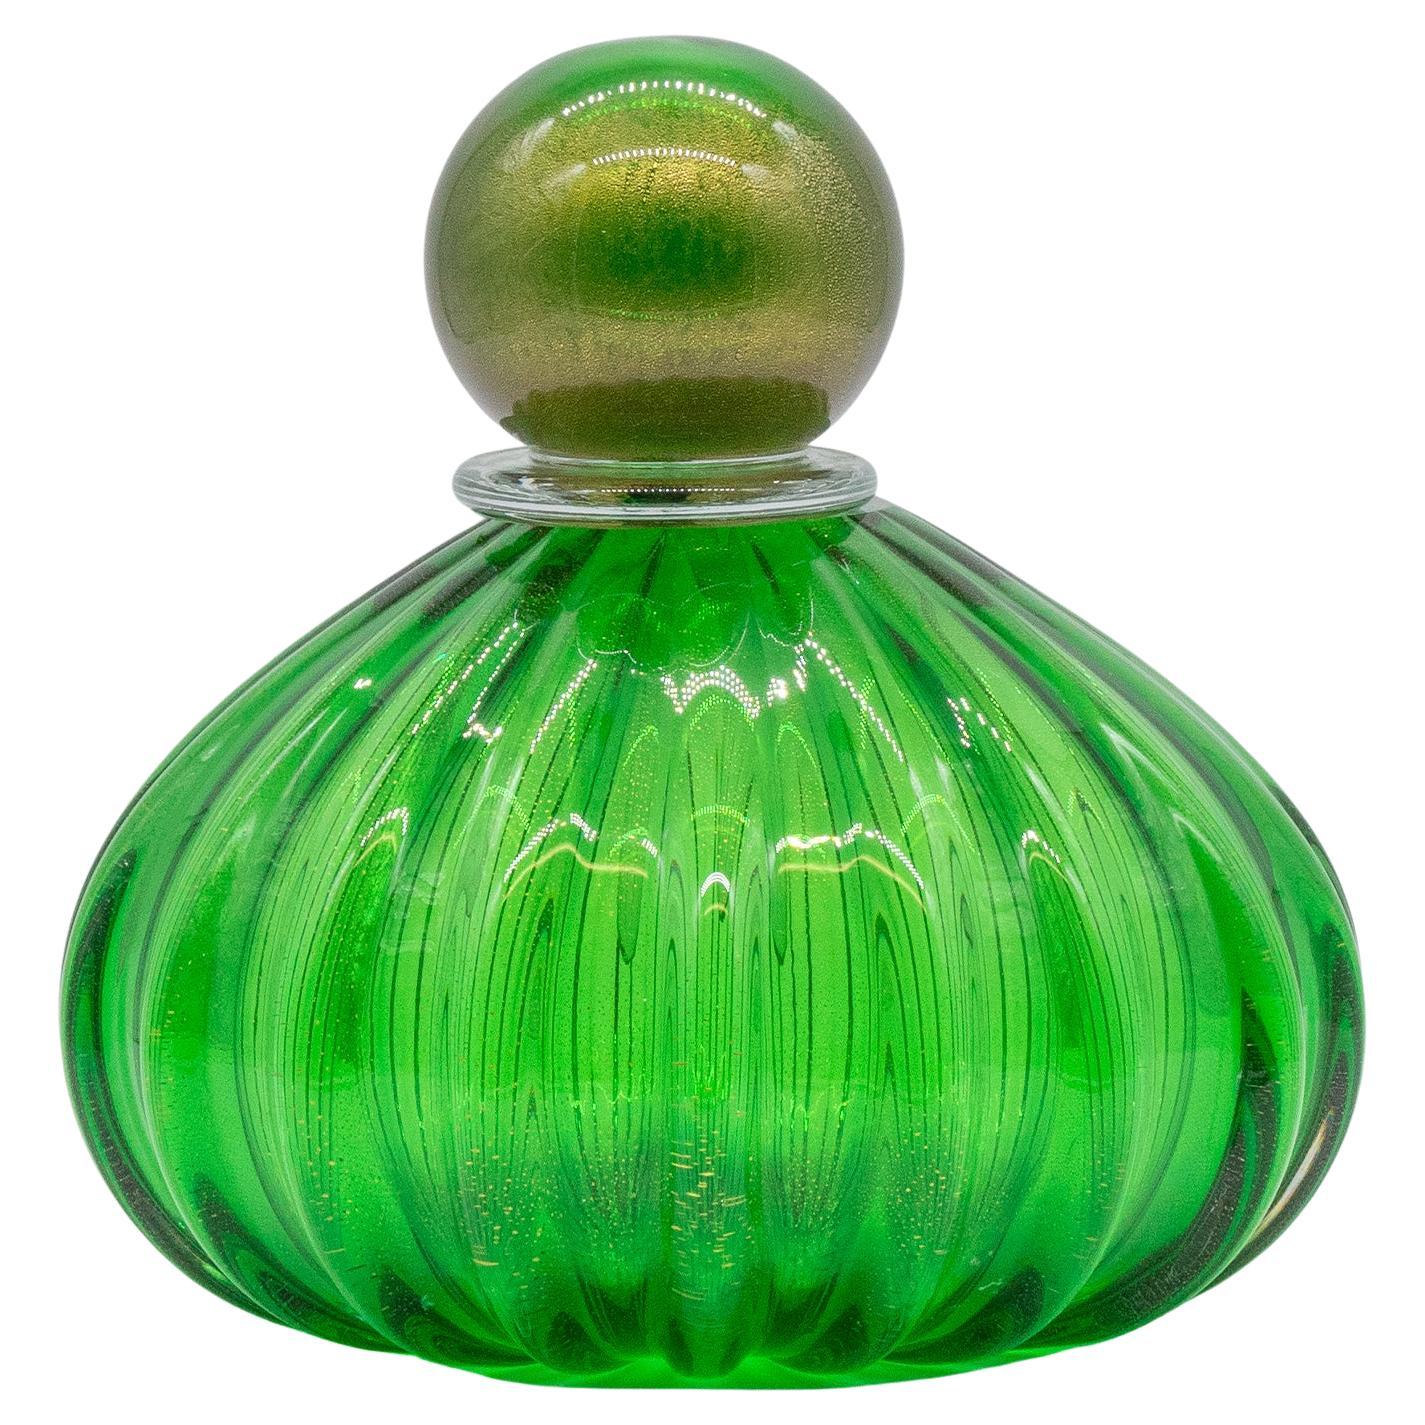 Vase à parfum vert en verre de Murano, fabriqué en Italie, soufflé à la bouche, produit récent